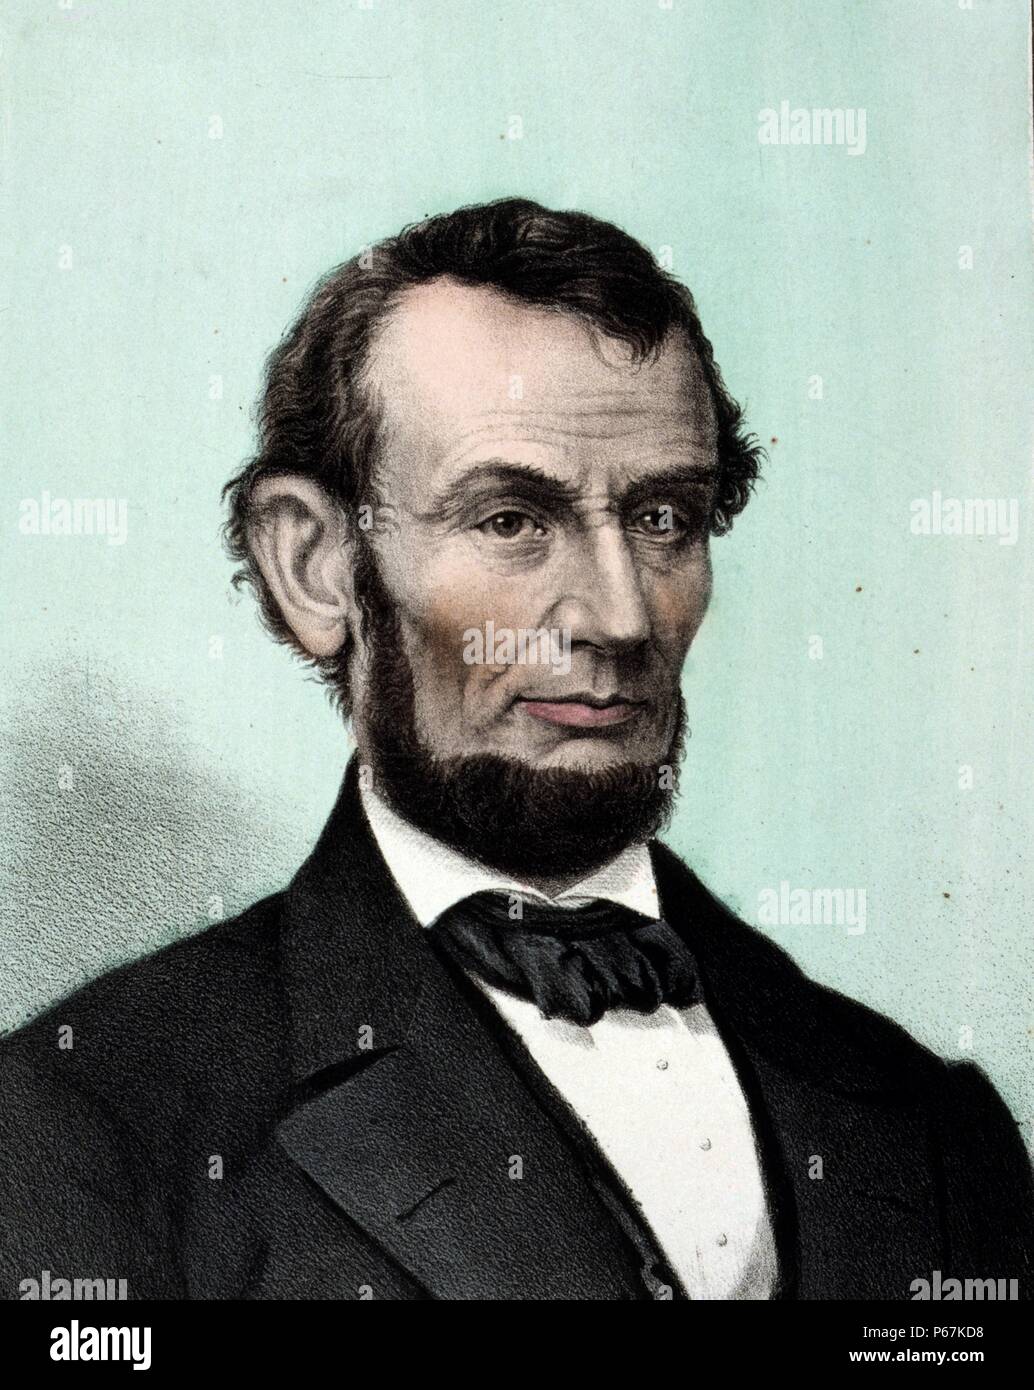 Abraham Lincoln. Lincoln è stato il sedicesimo presidente degli Stati Uniti, che serve da marzo 1861 fino al suo assassinio nel mese di aprile 1865. Egli ha portato gli Stati Uniti attraverso la sua guerra civile e ha abolito la schiavitù e modernizzato l'economia nel processo. Foto Stock